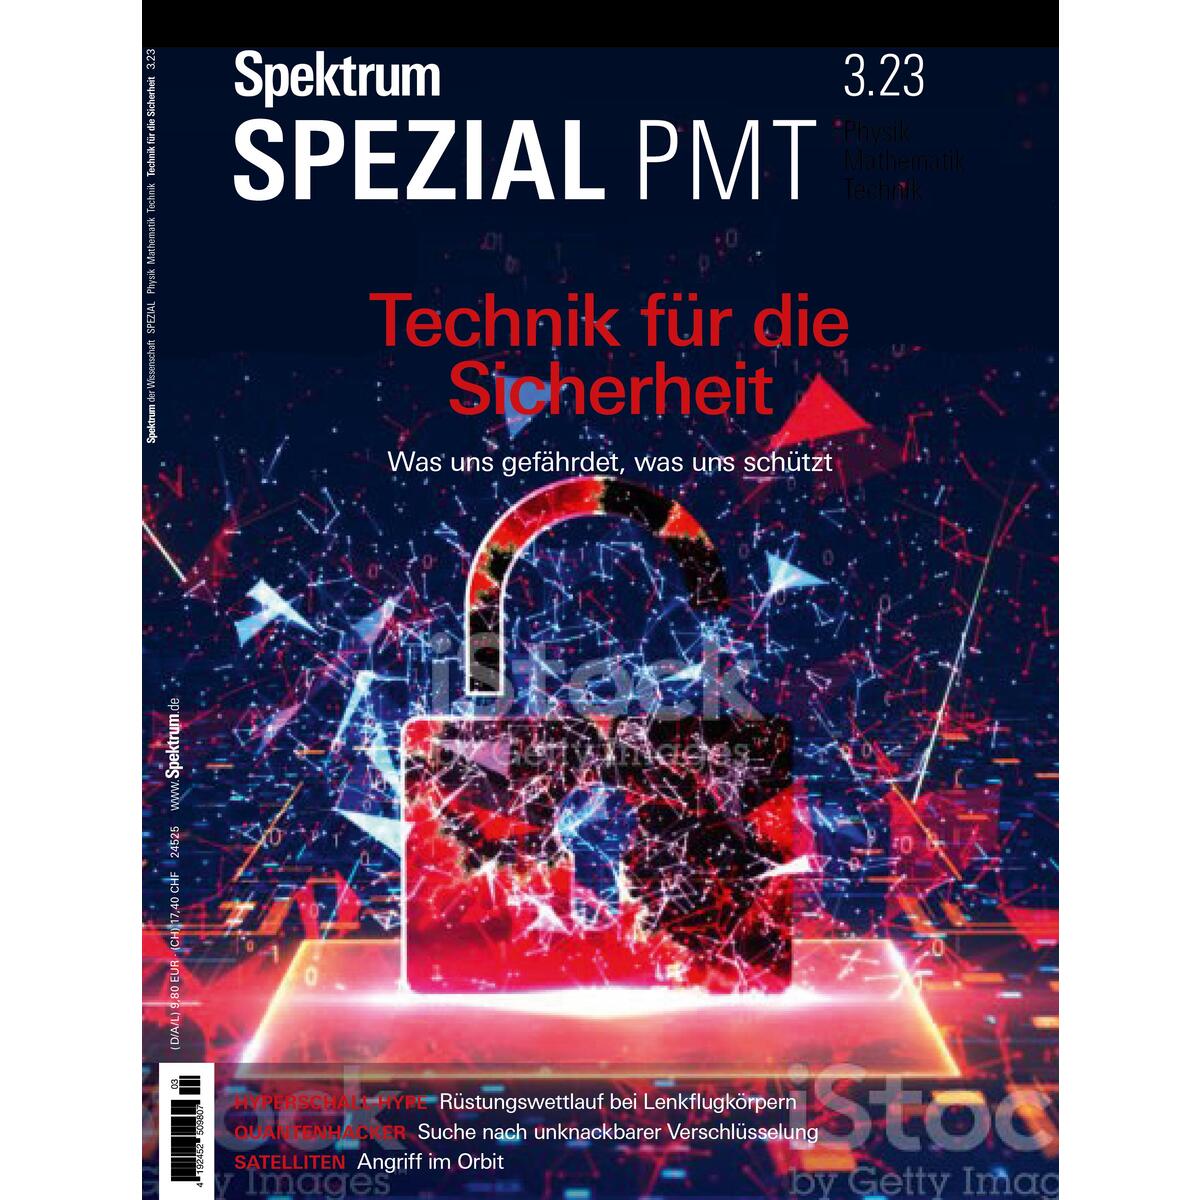 Spektrum Spezial - Technik für die Sicherheit von Spektrum D. Wissenschaft